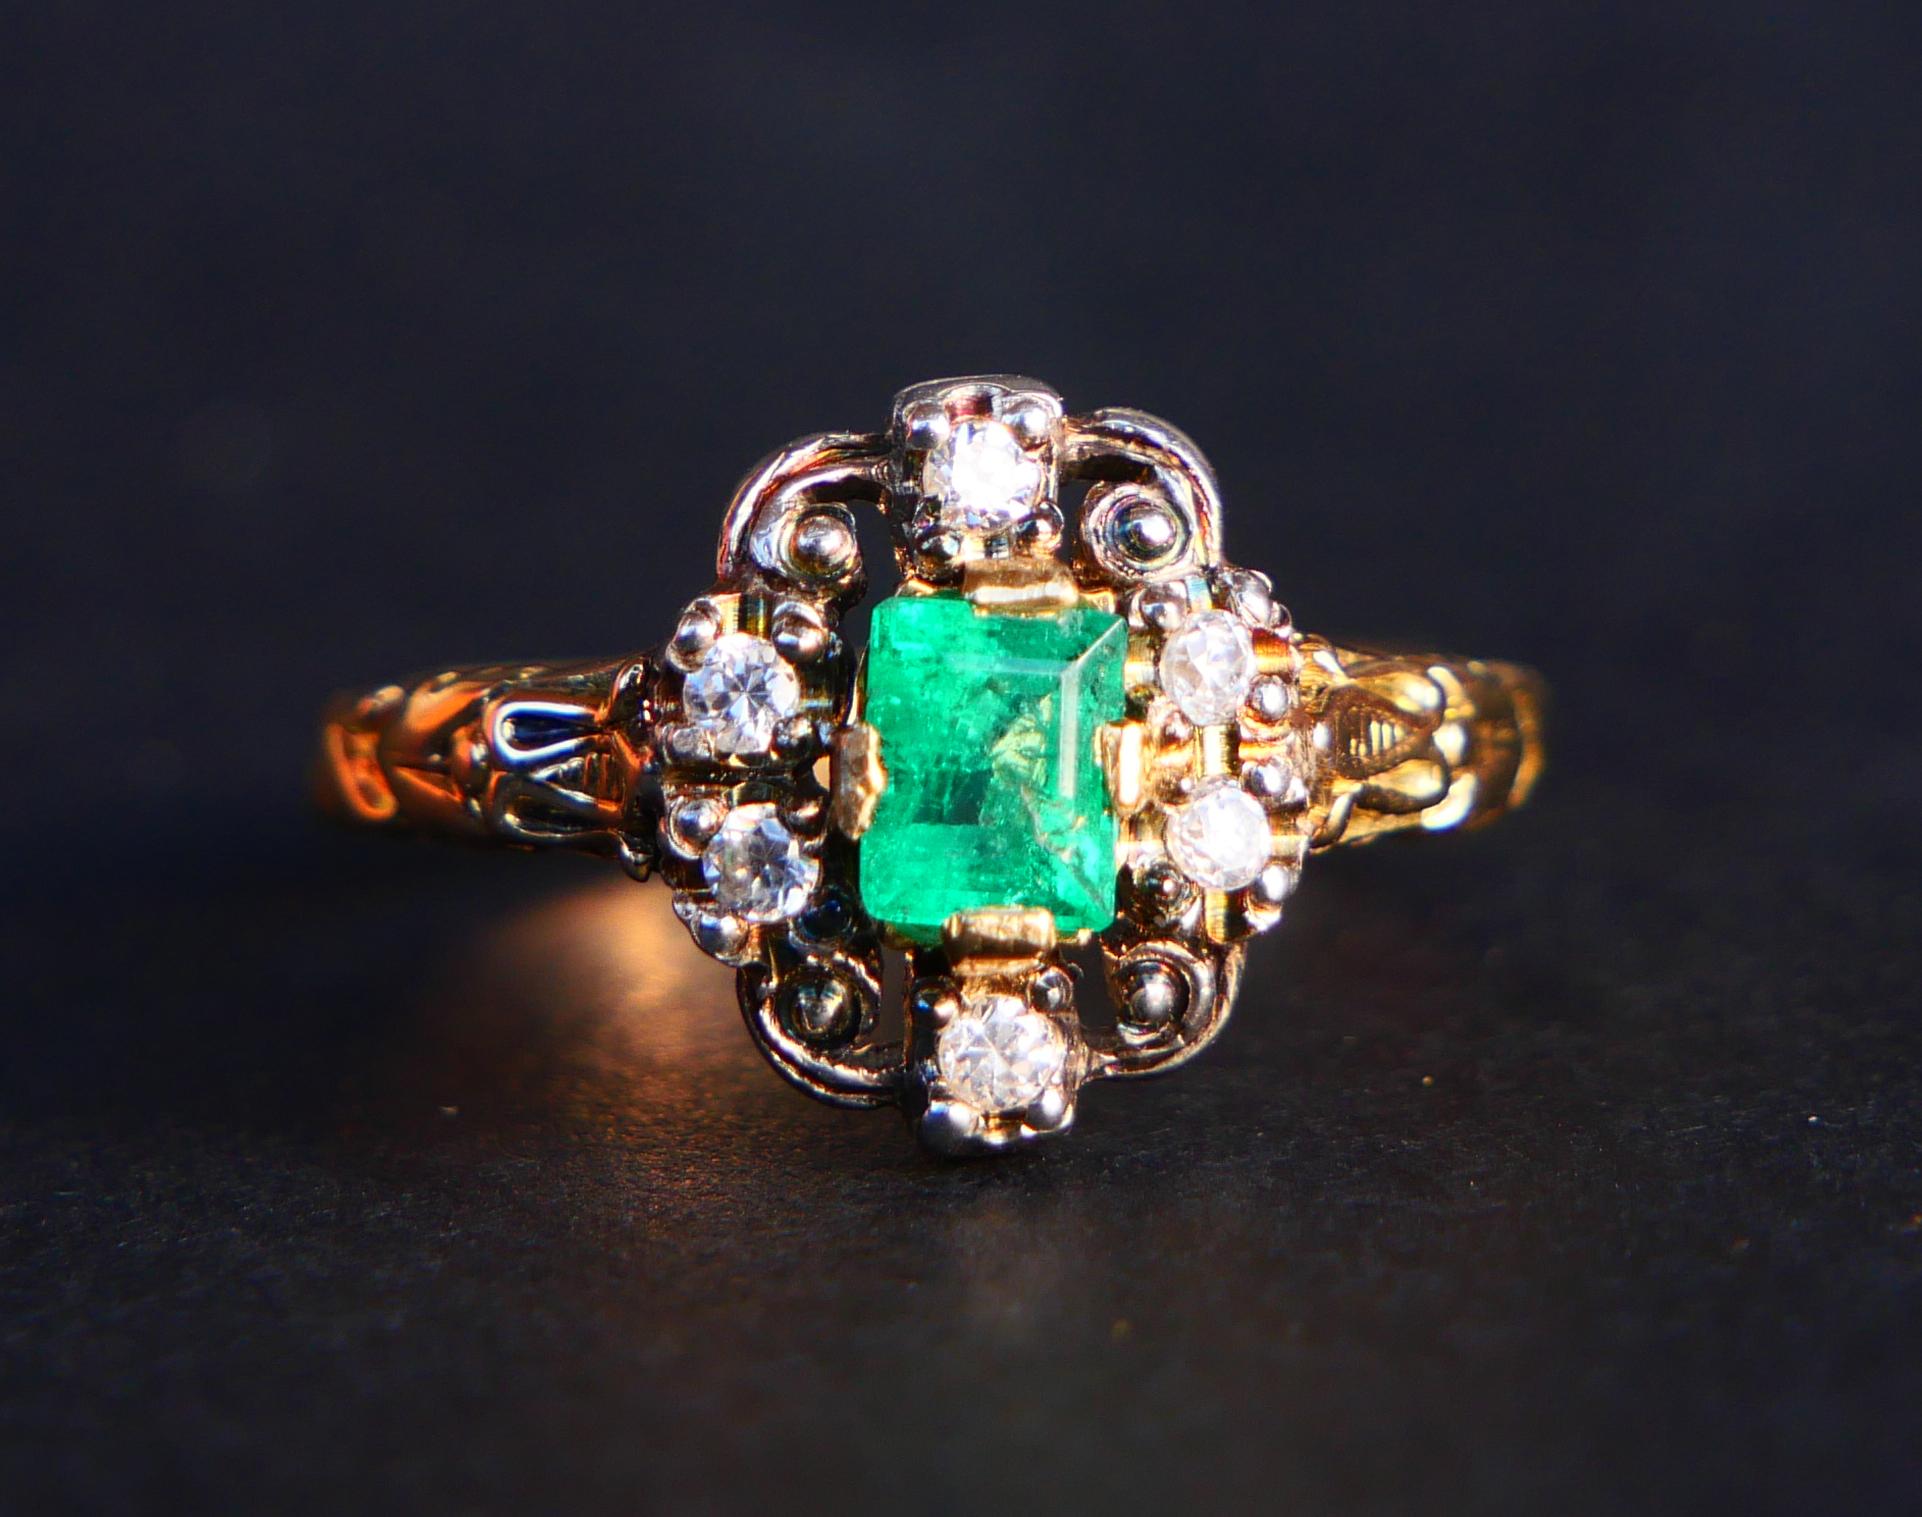 Schöner Ring mit Smaragd und Diamanten aus dem Jahr 1937.

Die Krone ist mit den oberen Teilen aus Silber zusammengesetzt, alle anderen Teile sind aus massivem 18K Gelbgold. Natürlicher Smaragdschliff Smaragdstein von lebhaftem Grün 5,5 mm x 4 mm x